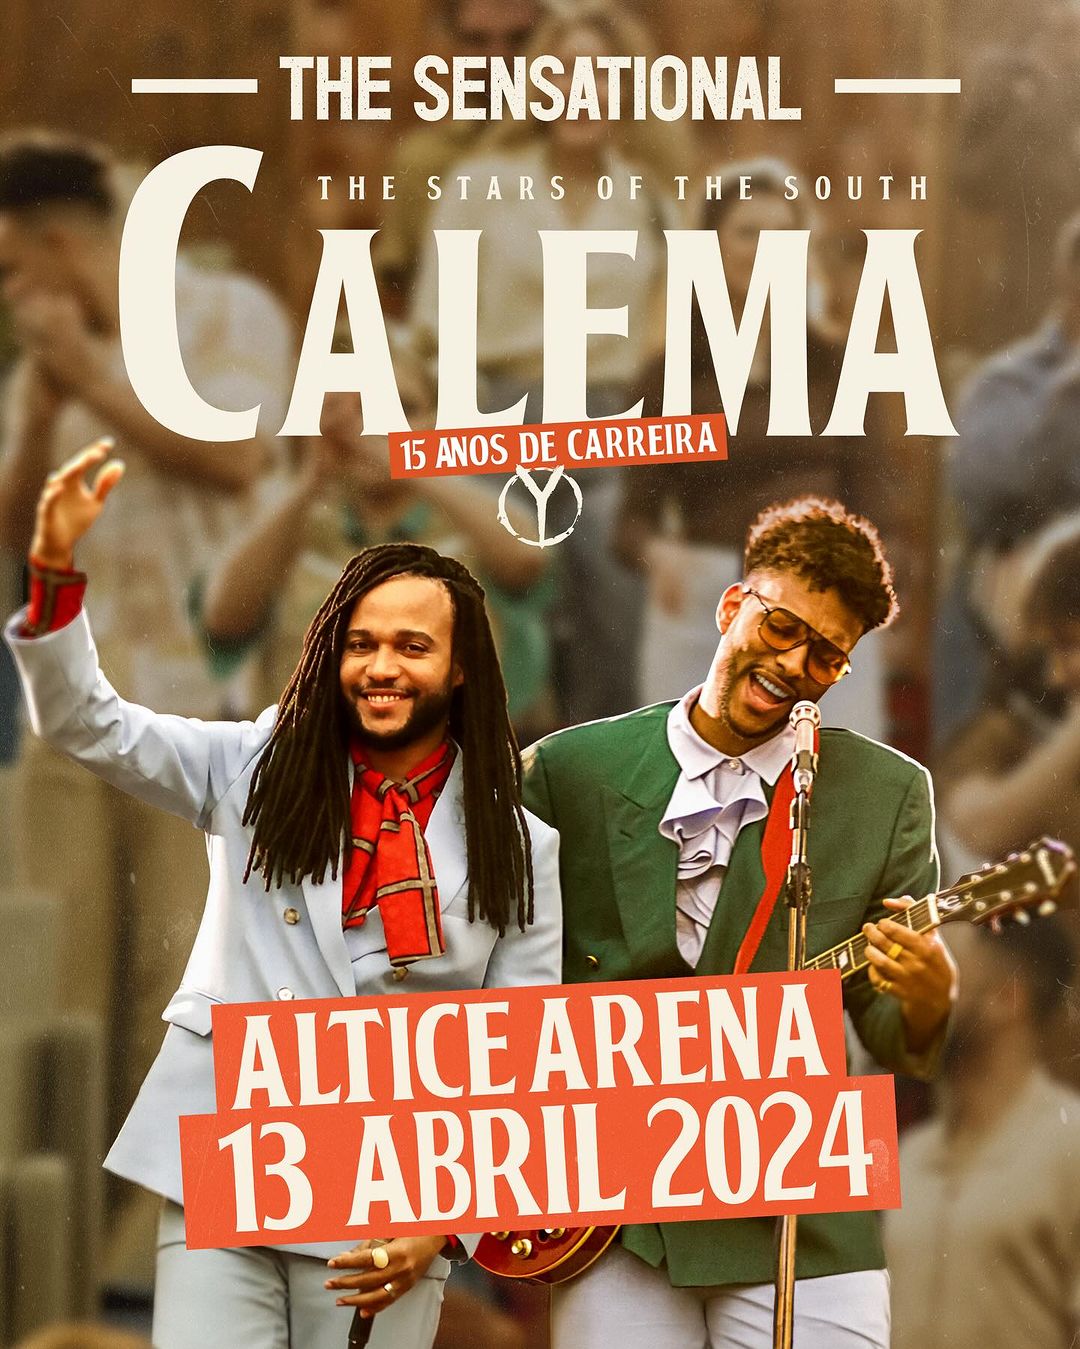 15 anos de carreira de Calema comemorados no Altice Arena a 13 de Abril